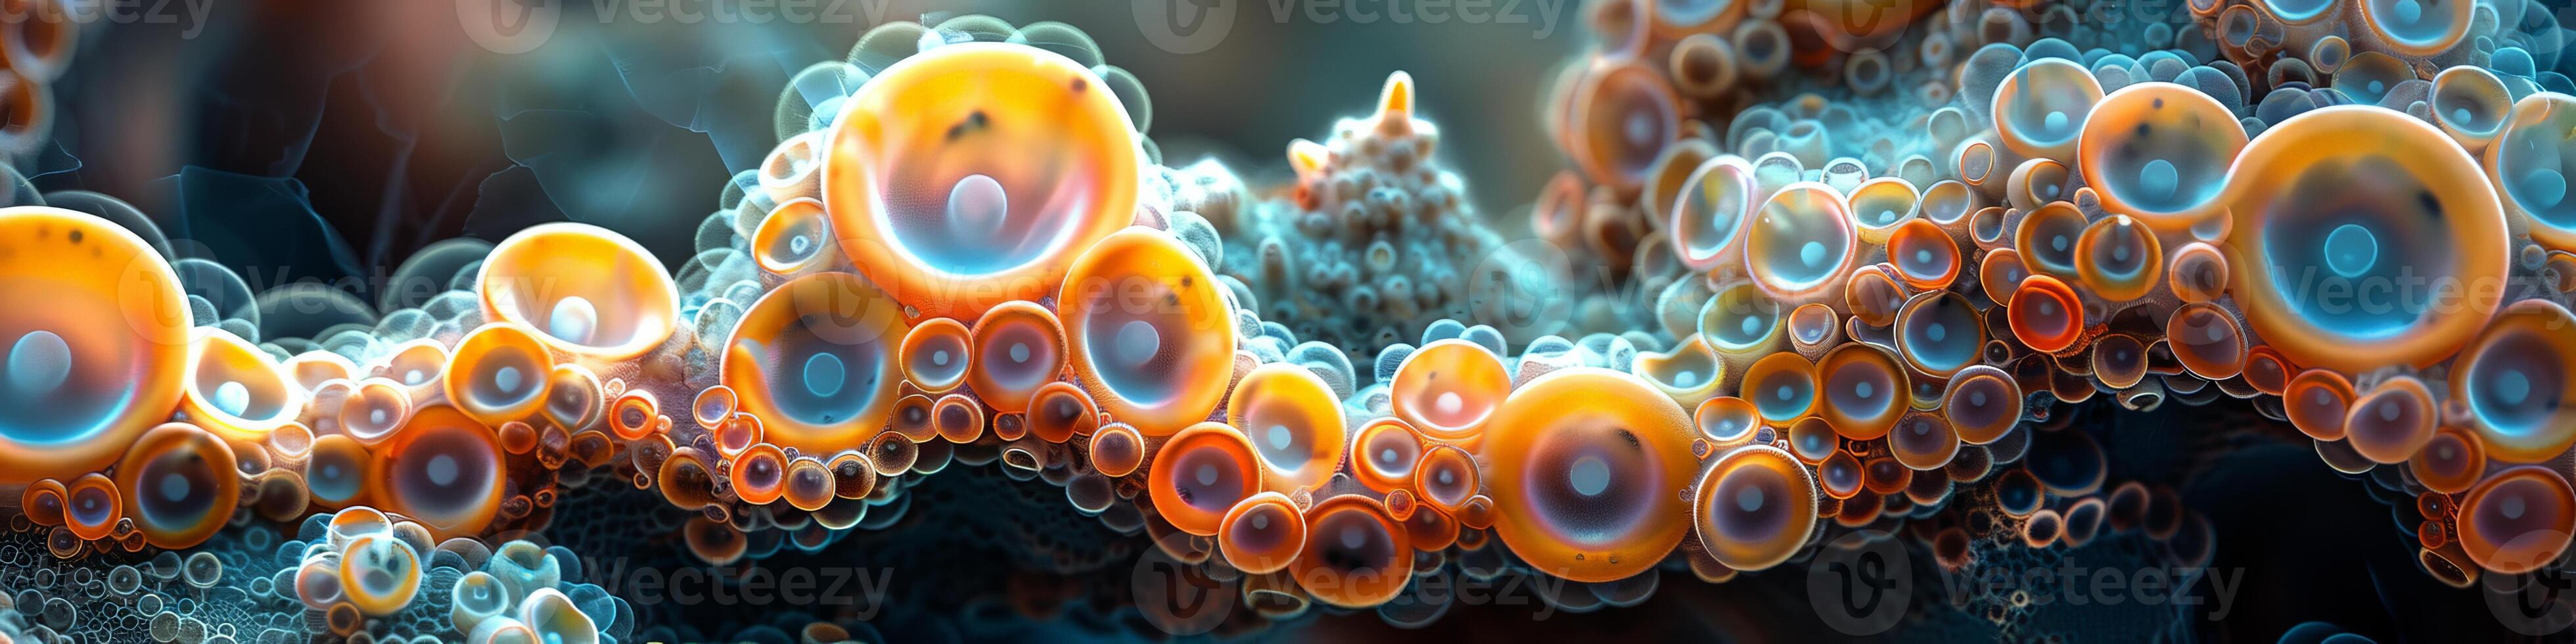 un grupo de burbujas derivas en el agua, creando un sereno escena foto